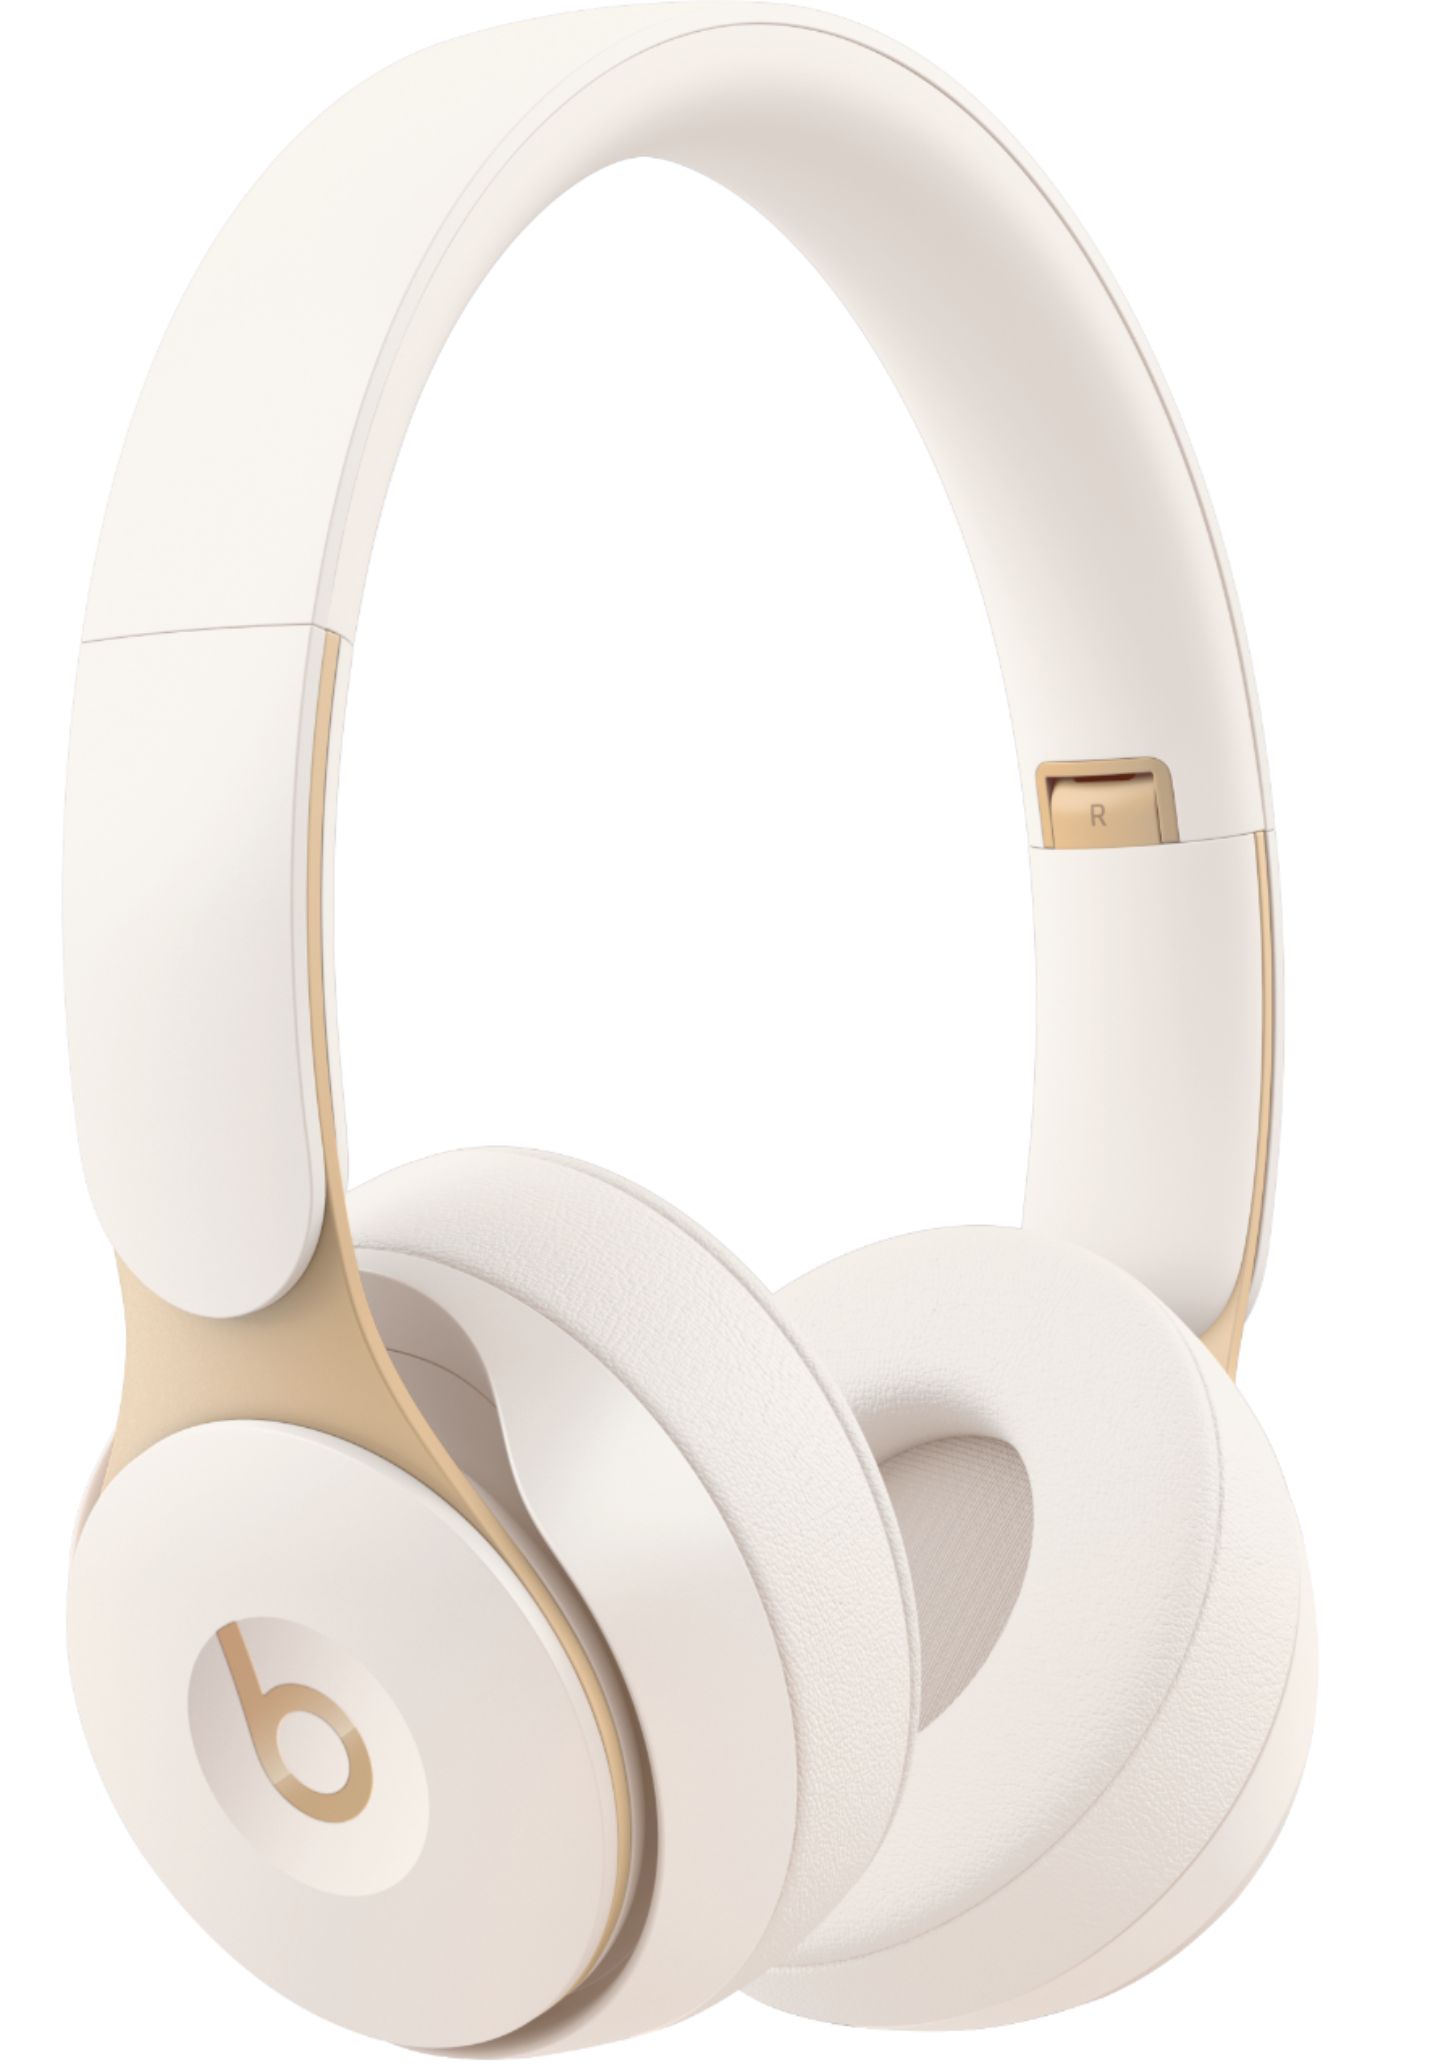 Beats by Dr. Dre Solo Pro Wireless Noise Cancelling On-Ear Headphones MRJ82LL/A - Best Buy